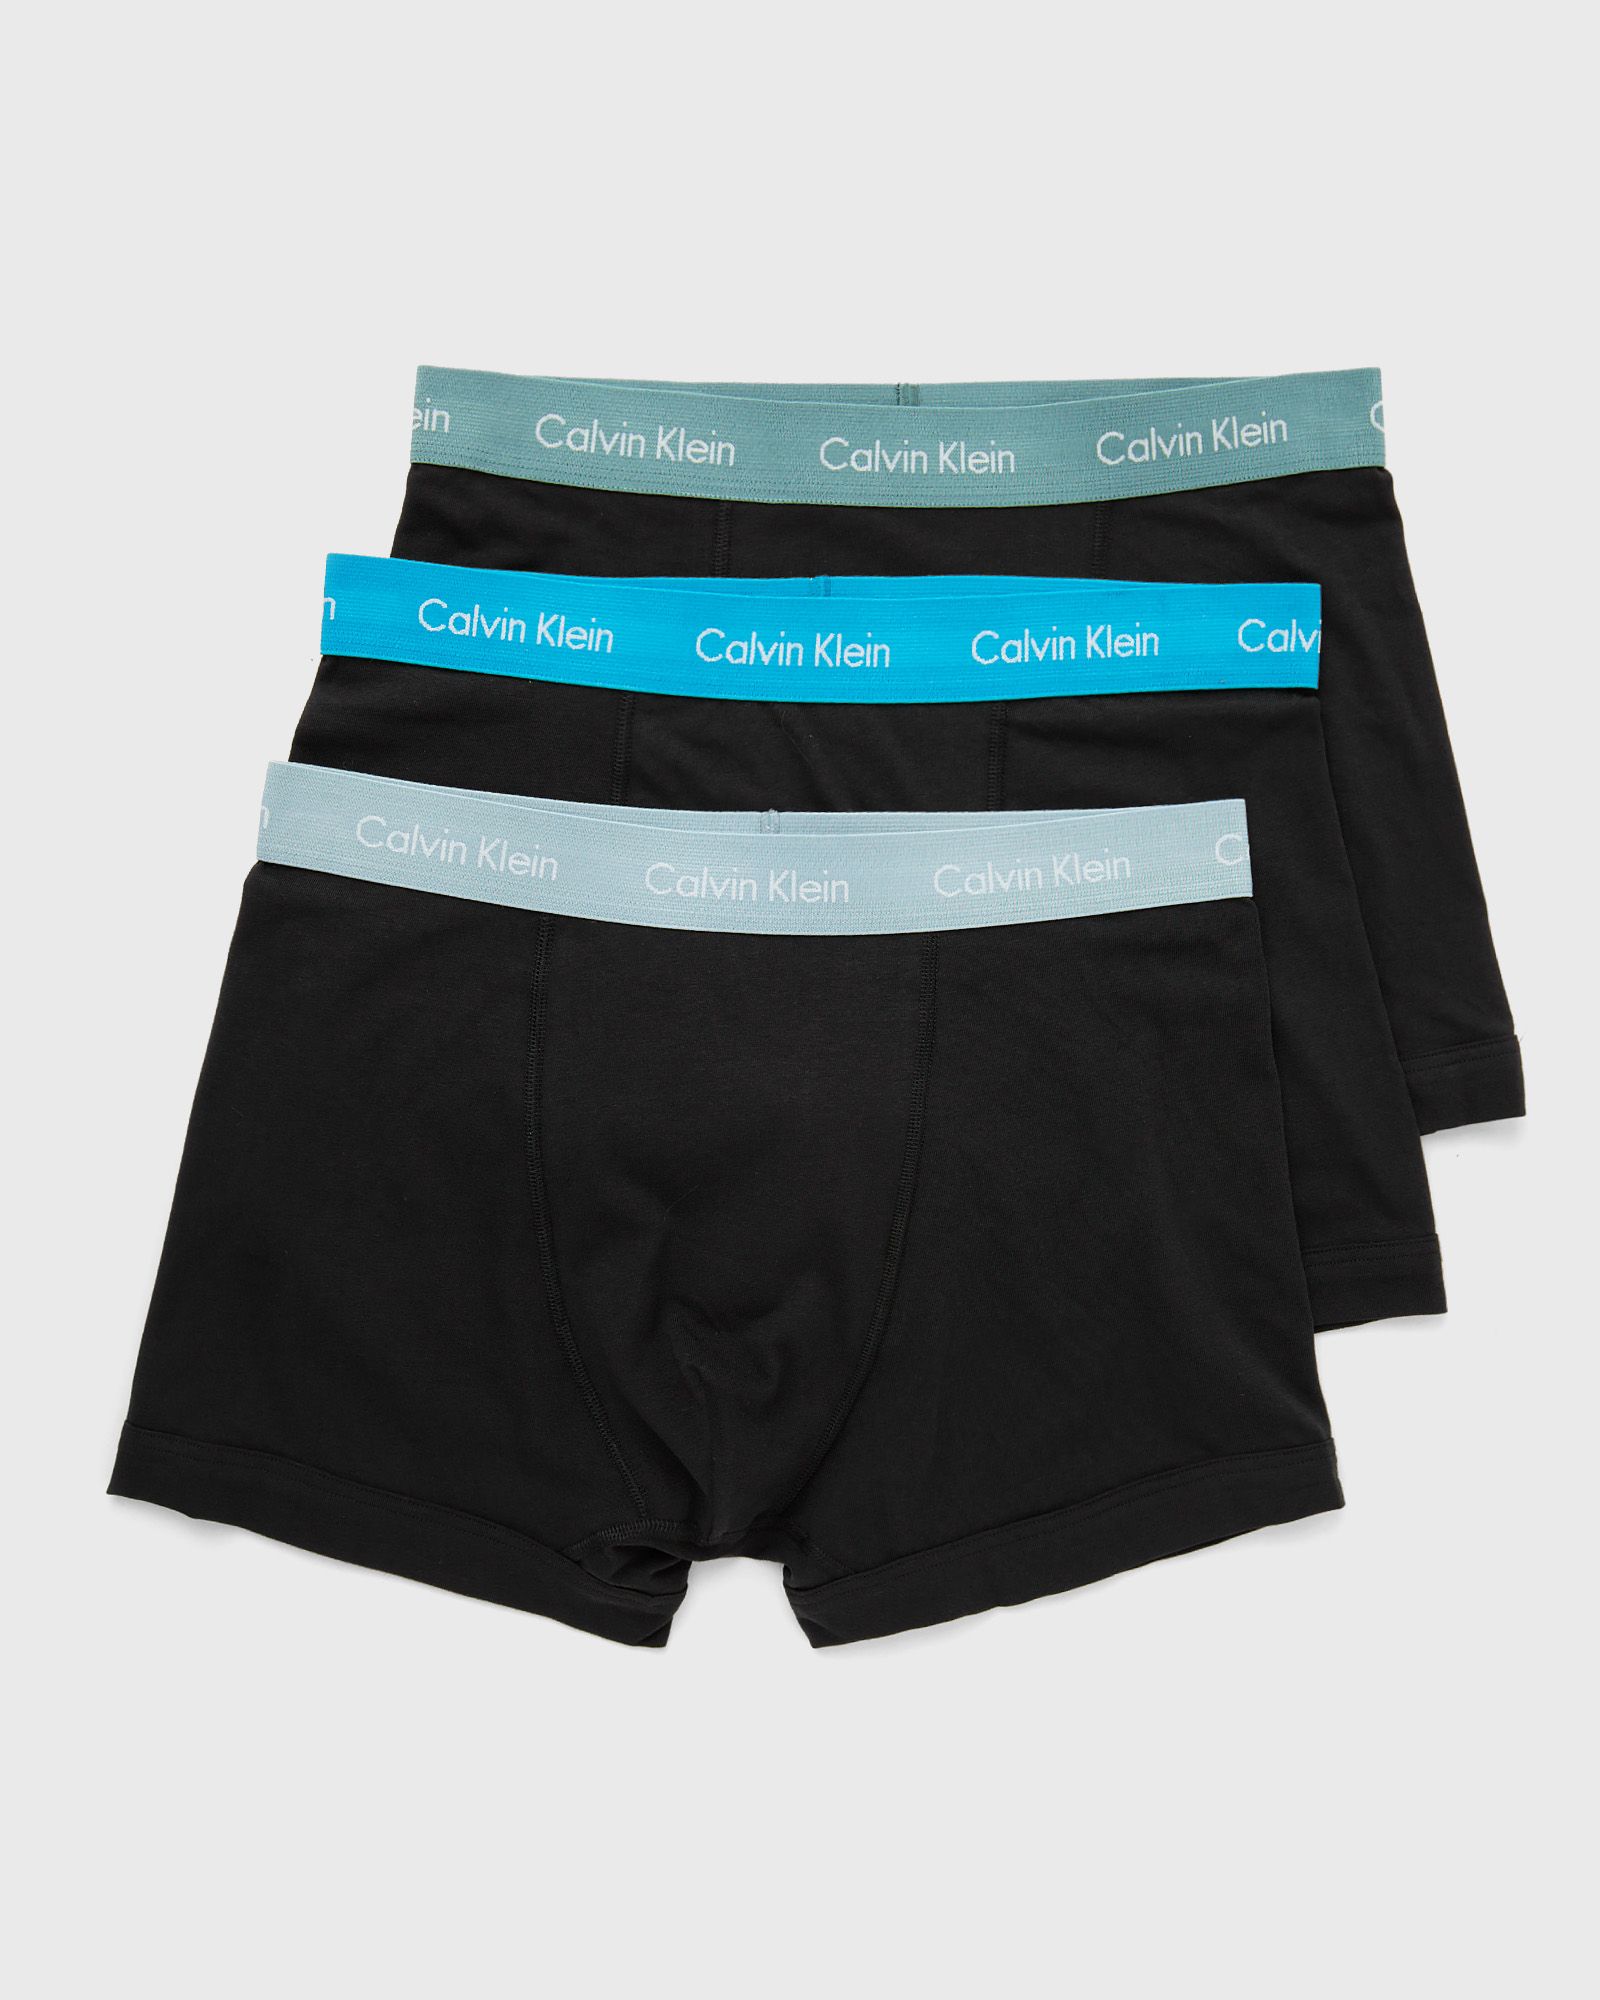 Calvin Klein Underwear - cotton stretch trunk trunk 3 pack men boxers & briefs black in größe:s